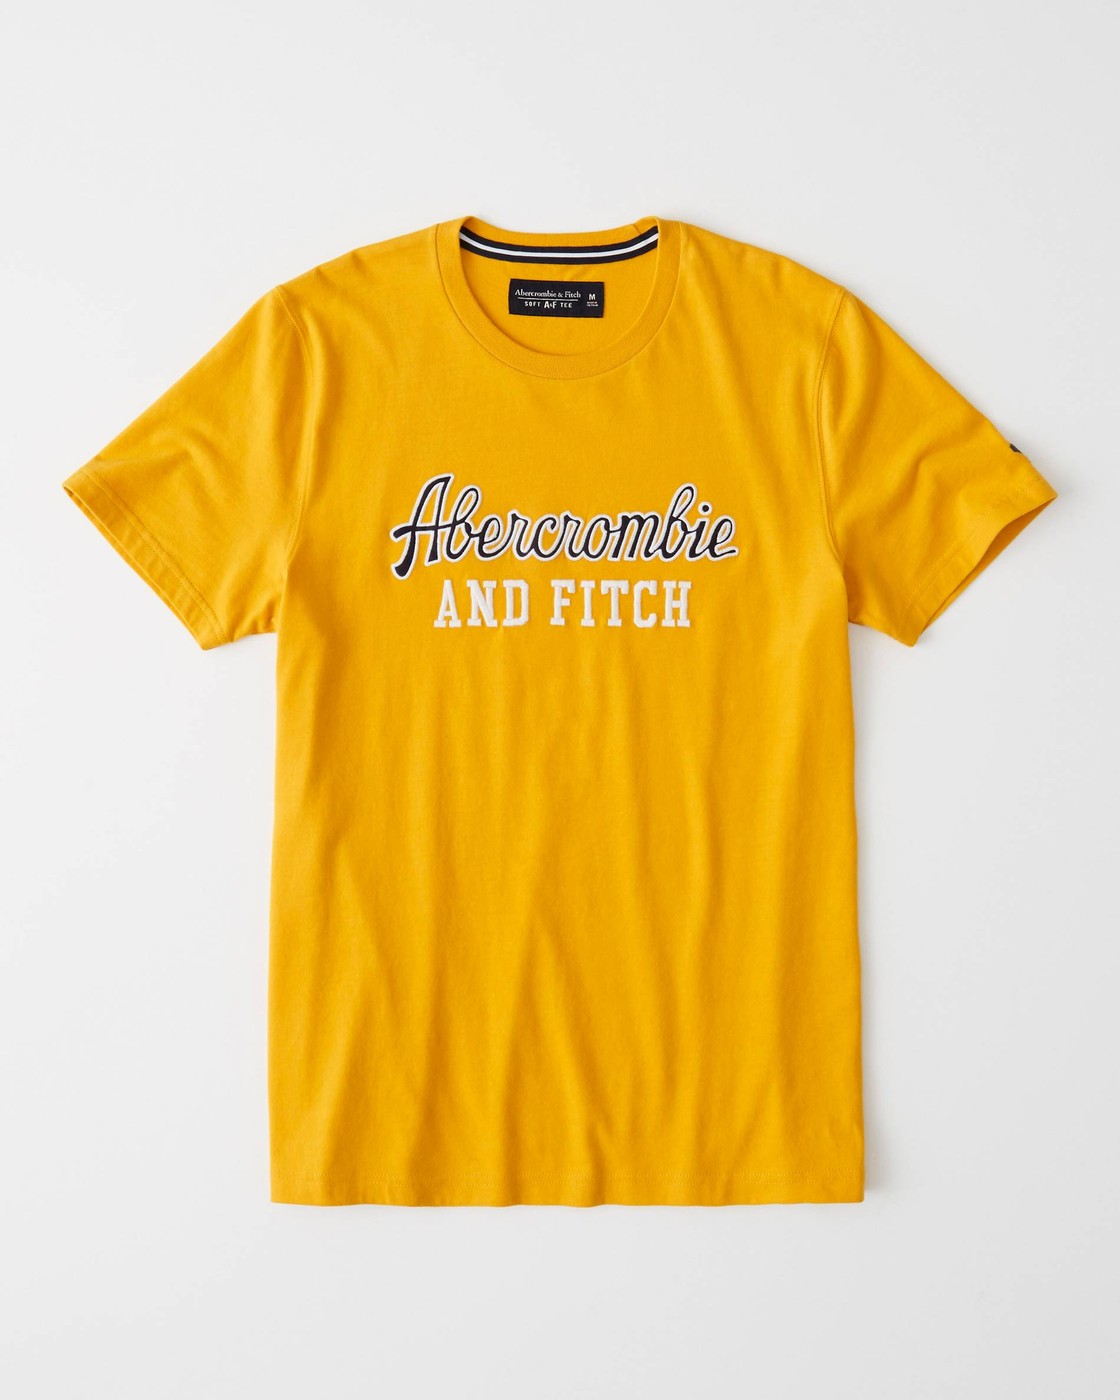 Желтая футболка - мужская футболка Abercrombie & Fitch, M, M